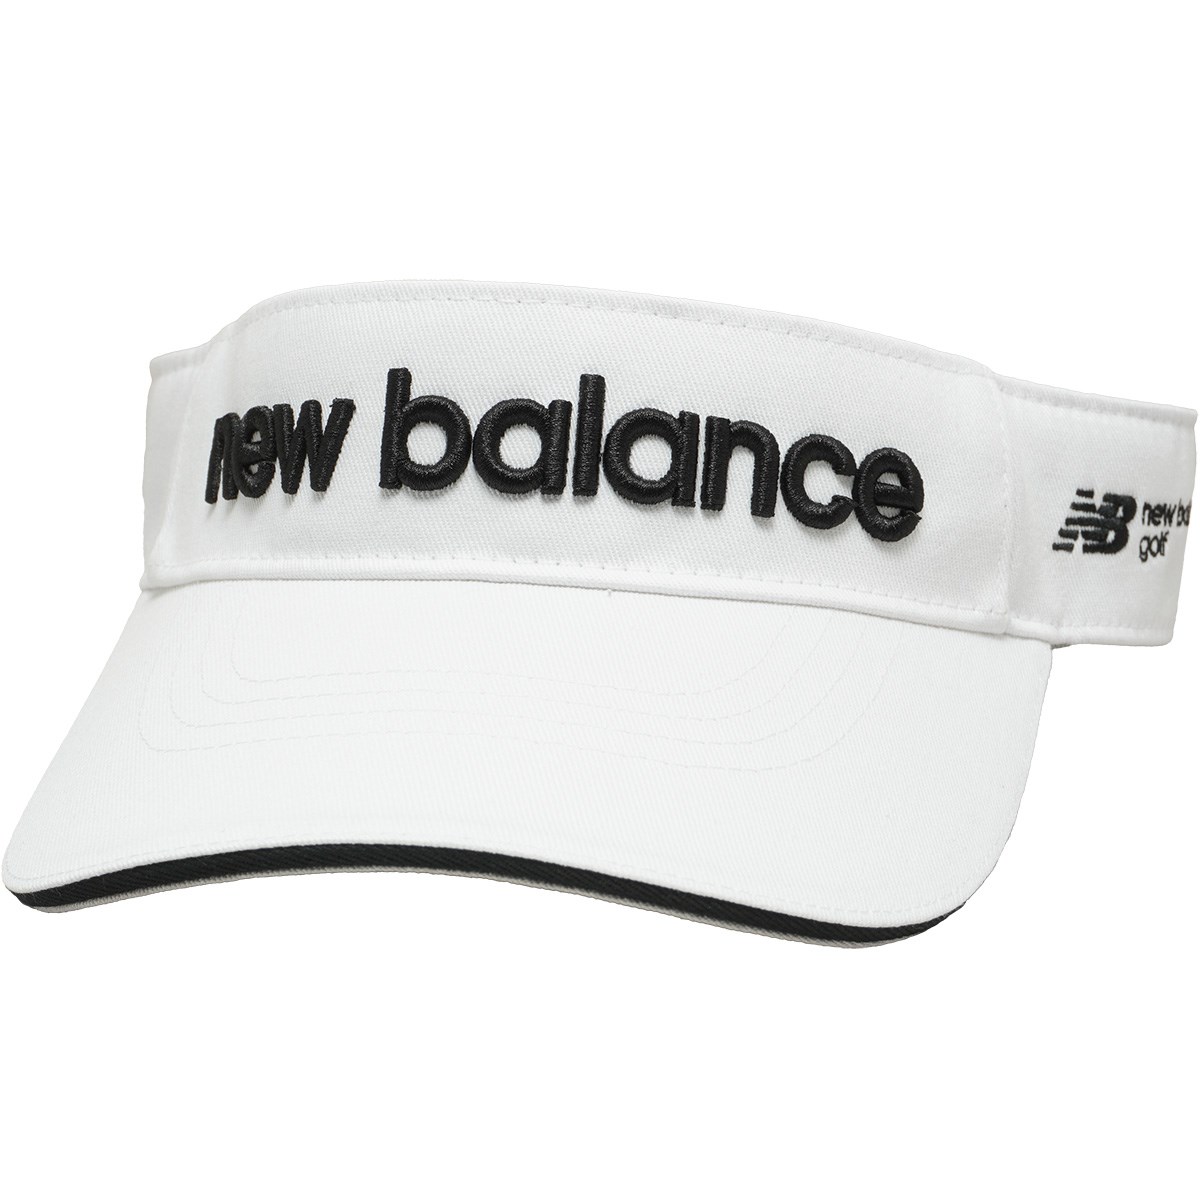 サンバイザー(【男性】バイザー)|New Balance(ニューバランス) 012 